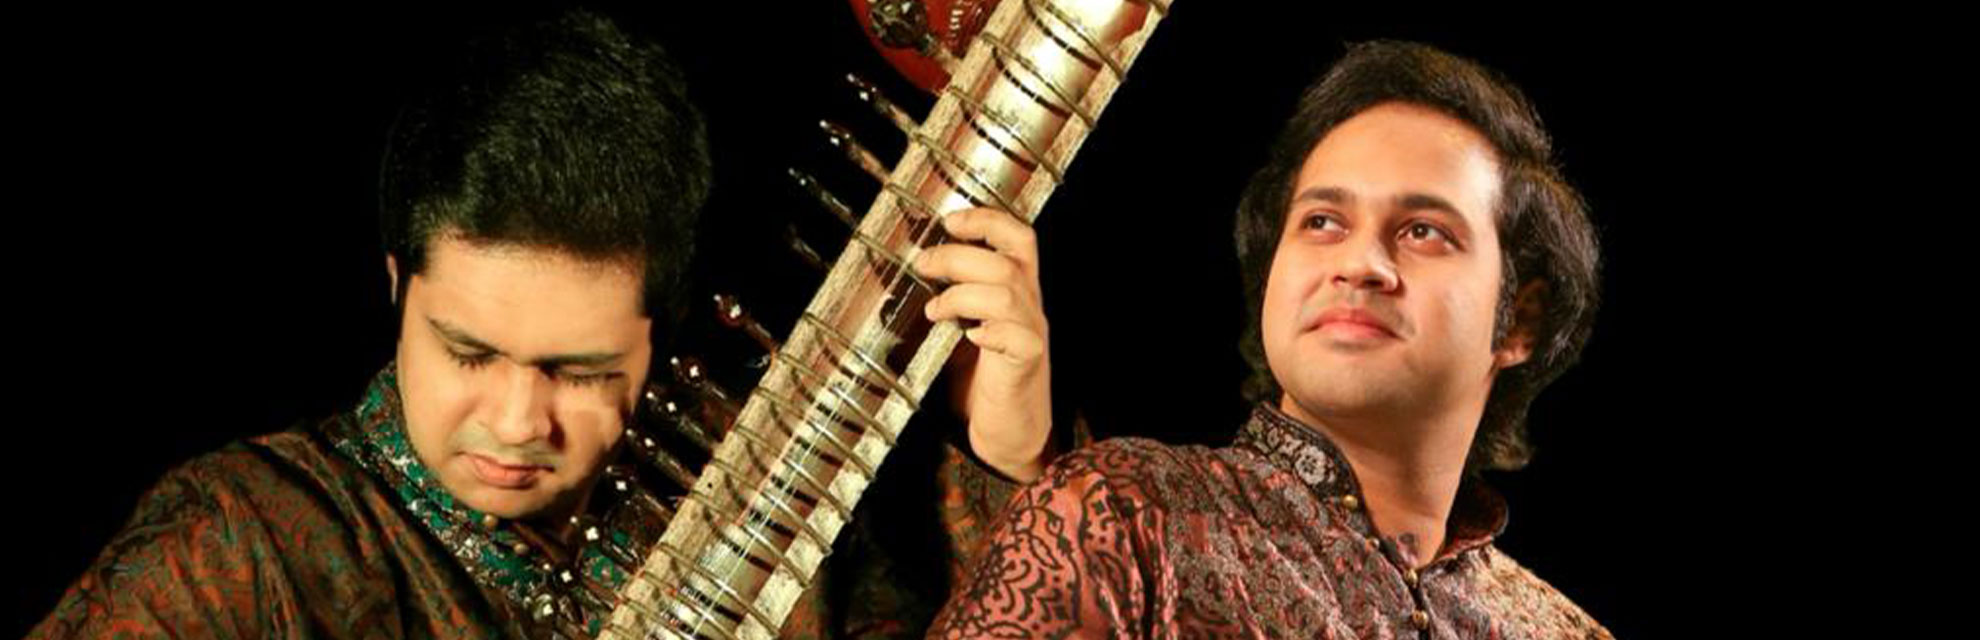 वैश्विक 'जुगलबंदी': मोहन भाई हिंदुस्तानी संगीत को दुनिया में ले जाते हैं